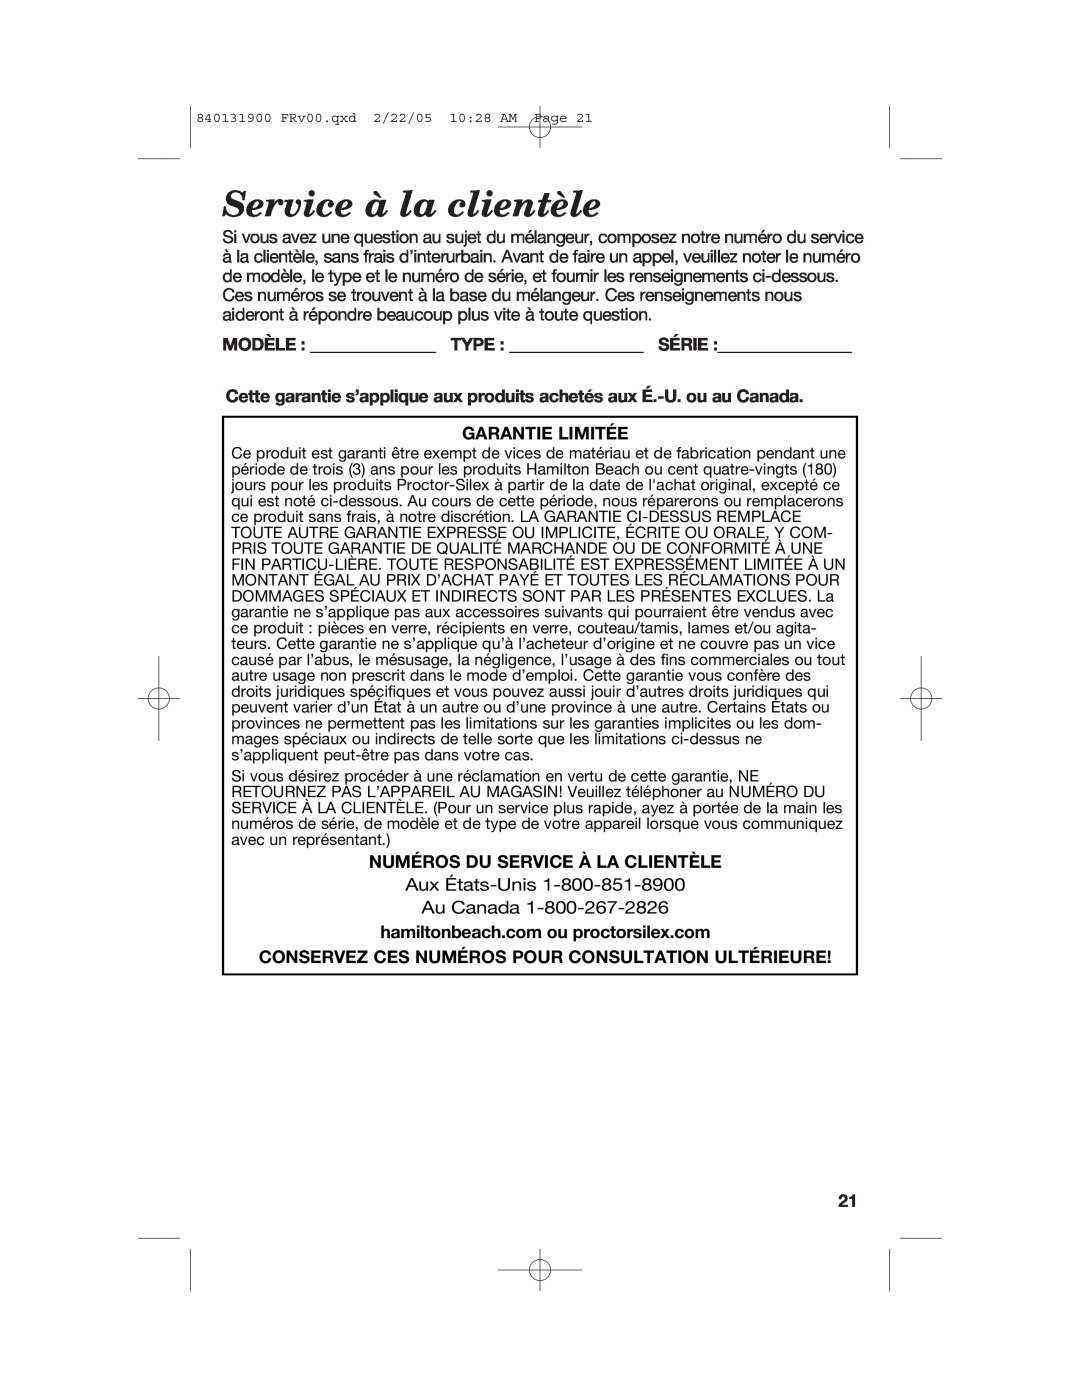 Hamilton Beach 50754C manual Service à la clientèle, Modèle Type Série, Garantie Limitée, Numéros Du Service À La Clientèle 